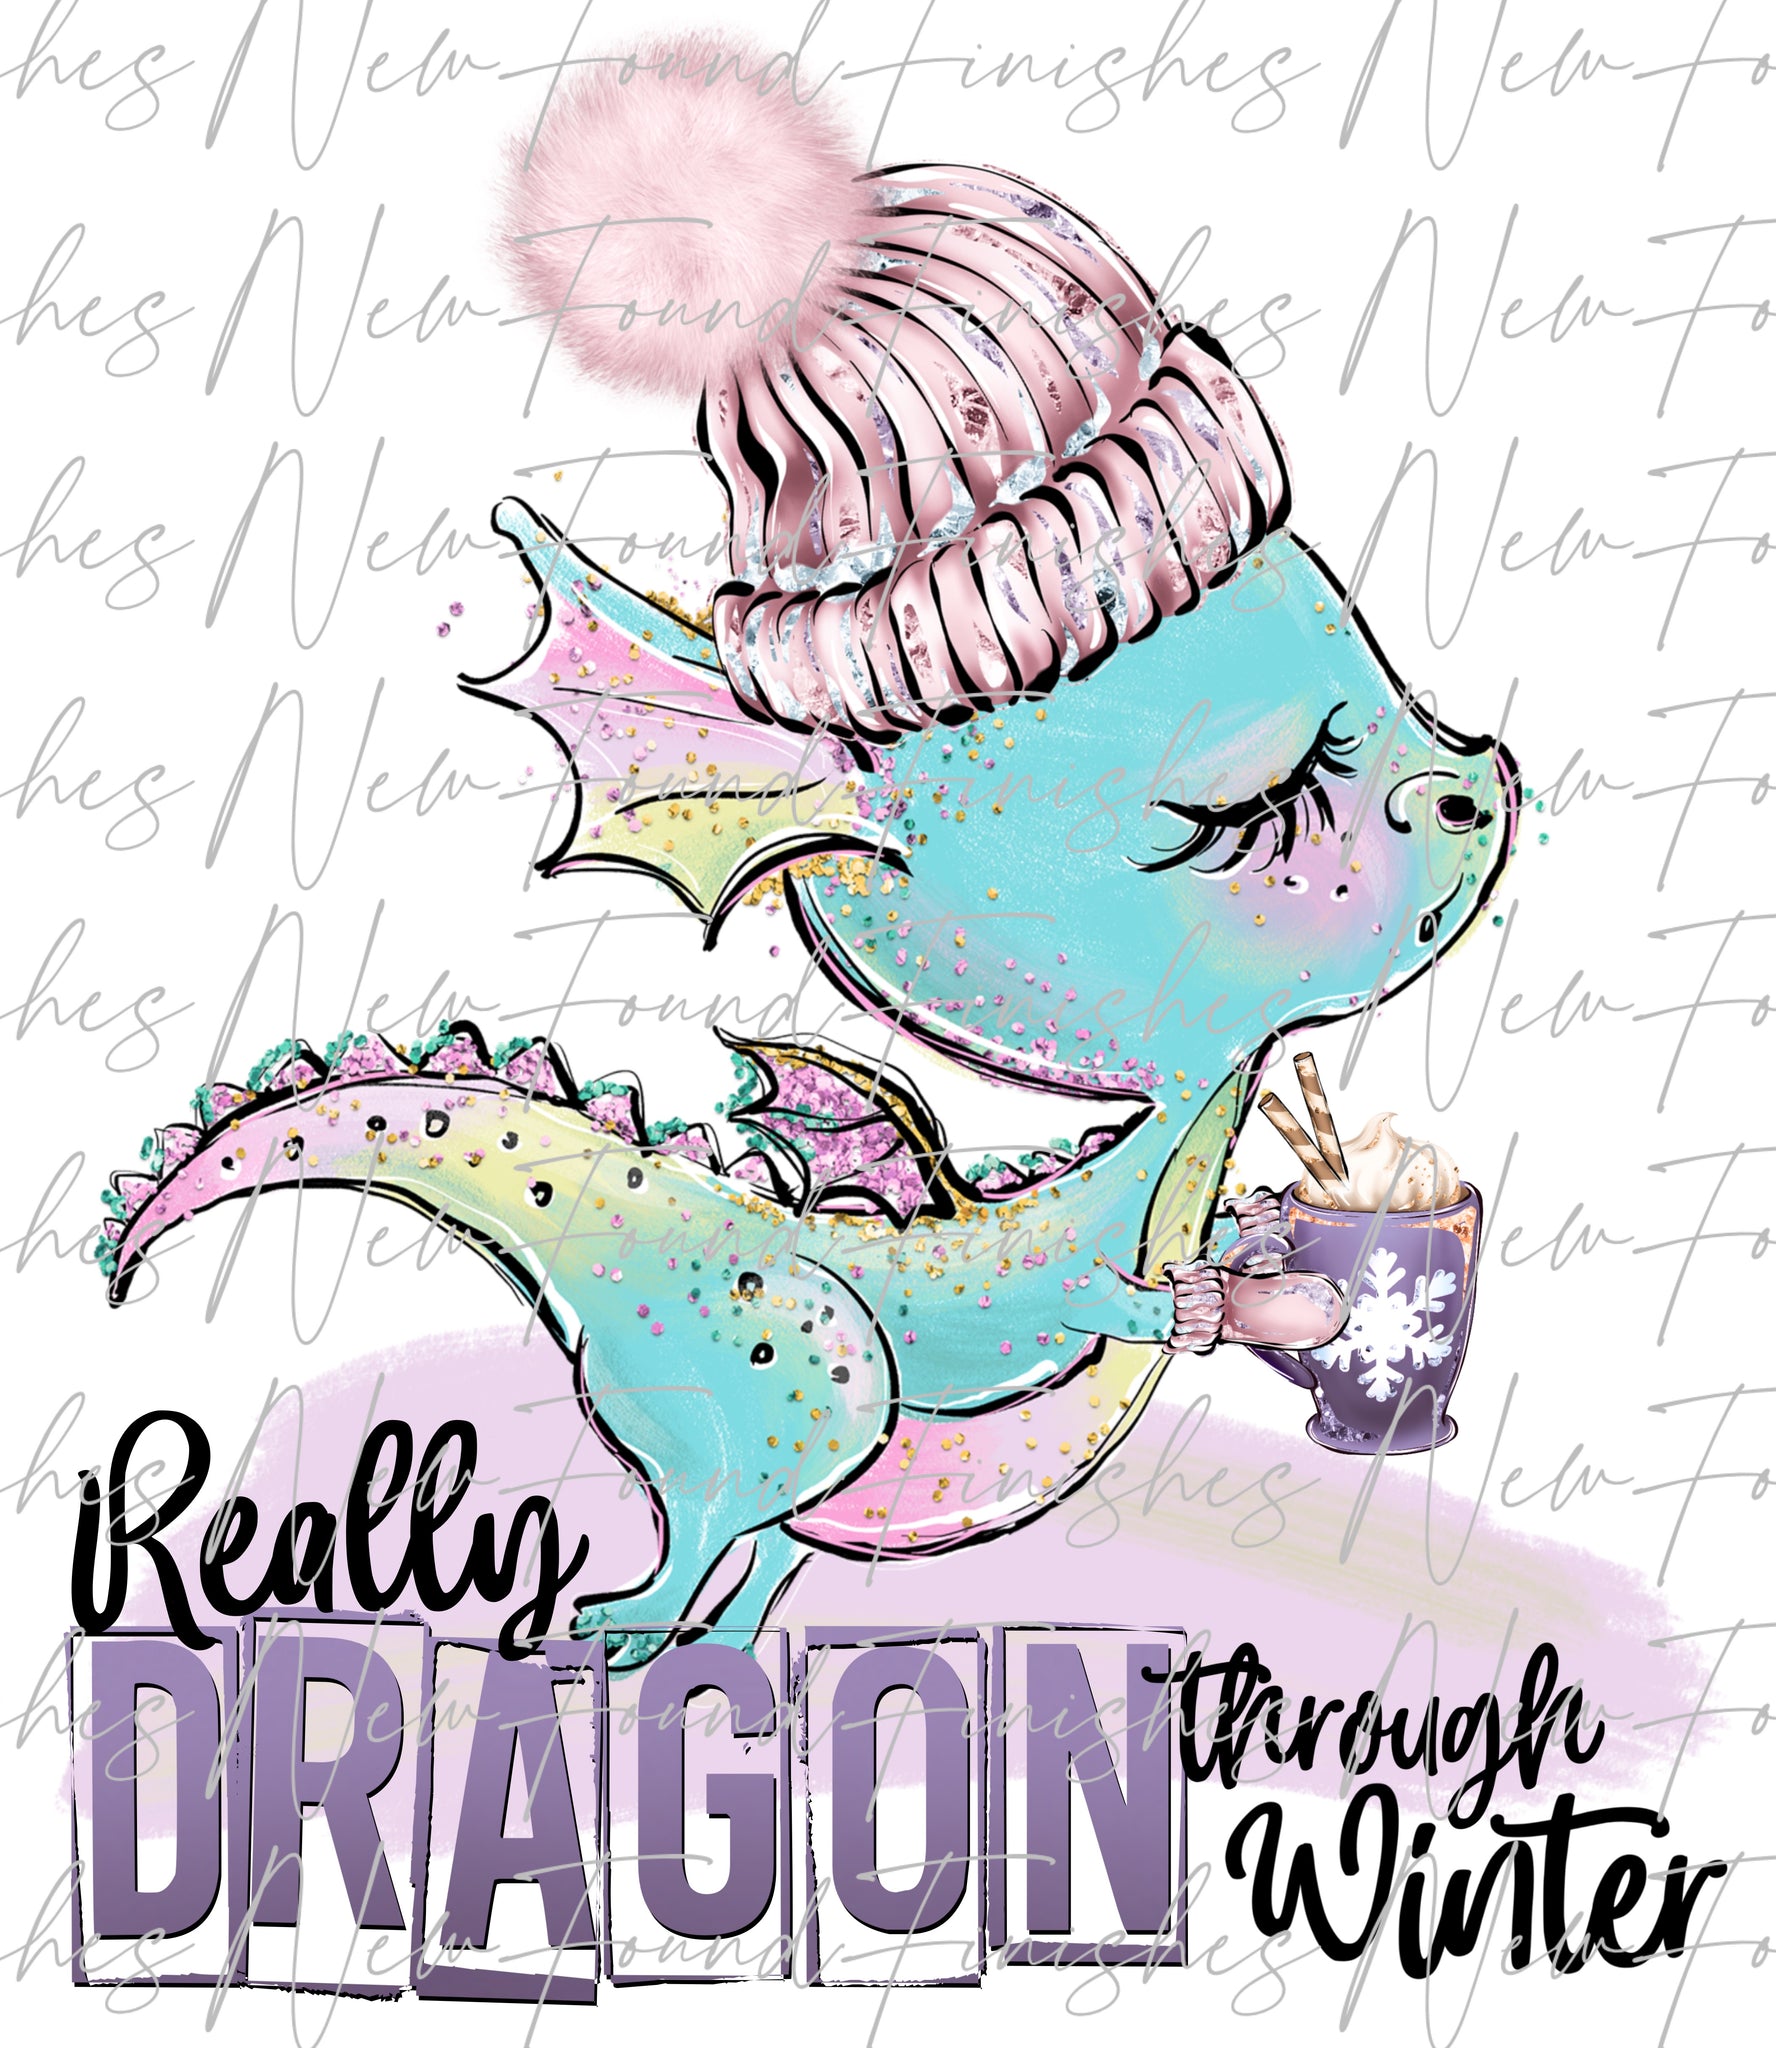 Dragon through winter